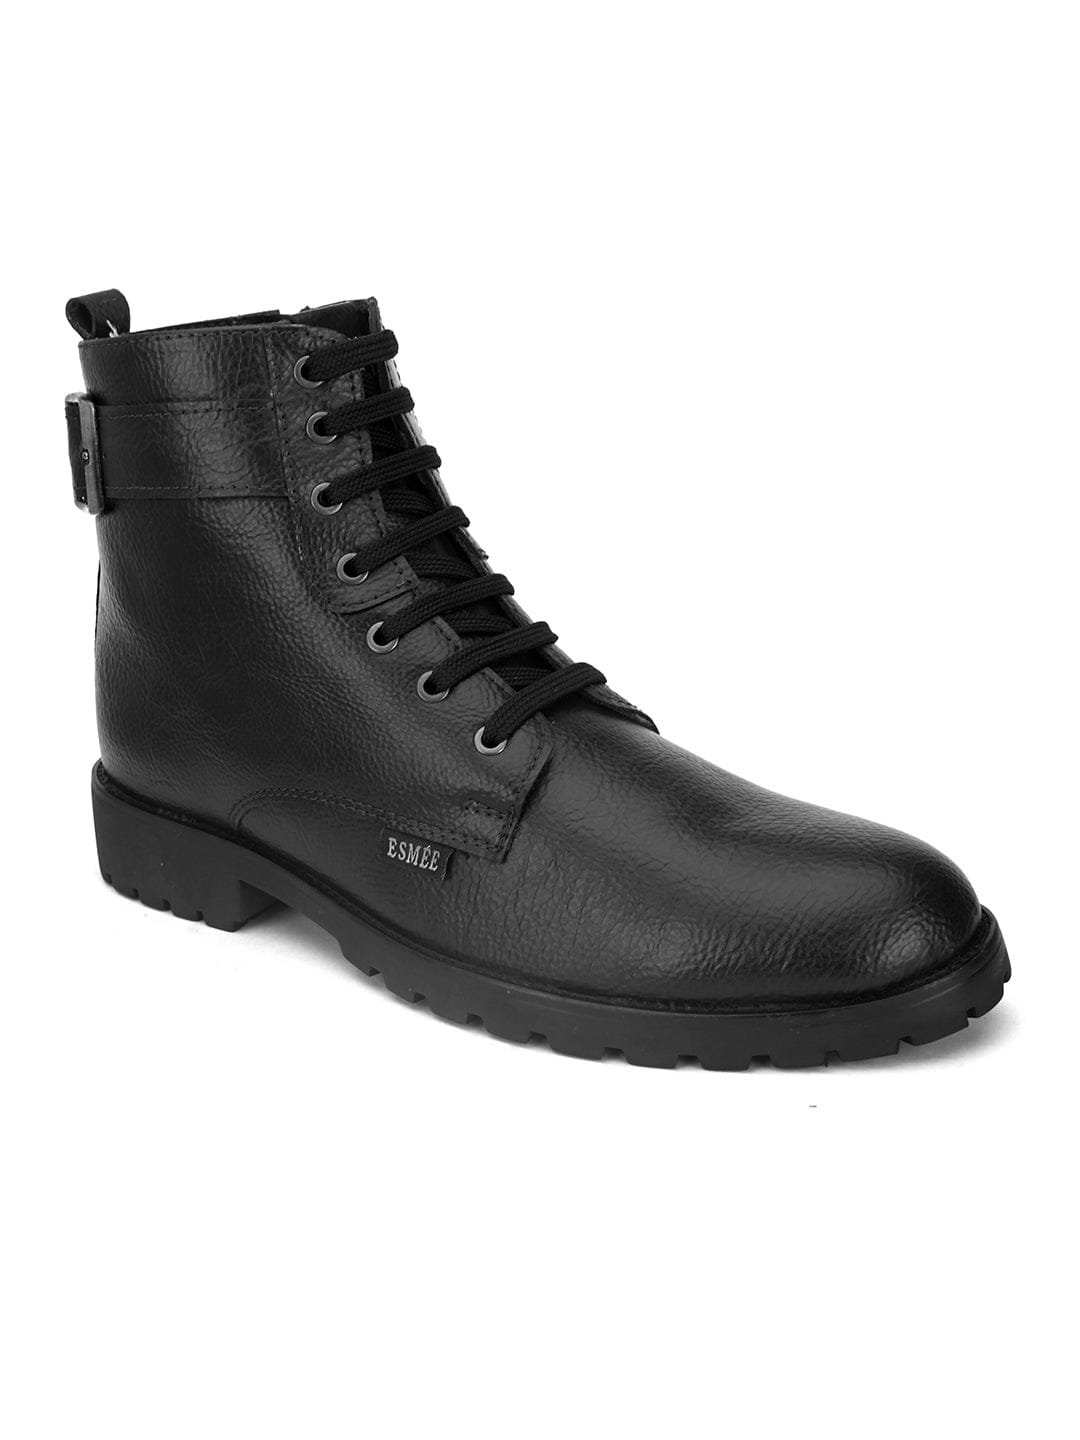 ESMEE Men's Casual Zip Boots